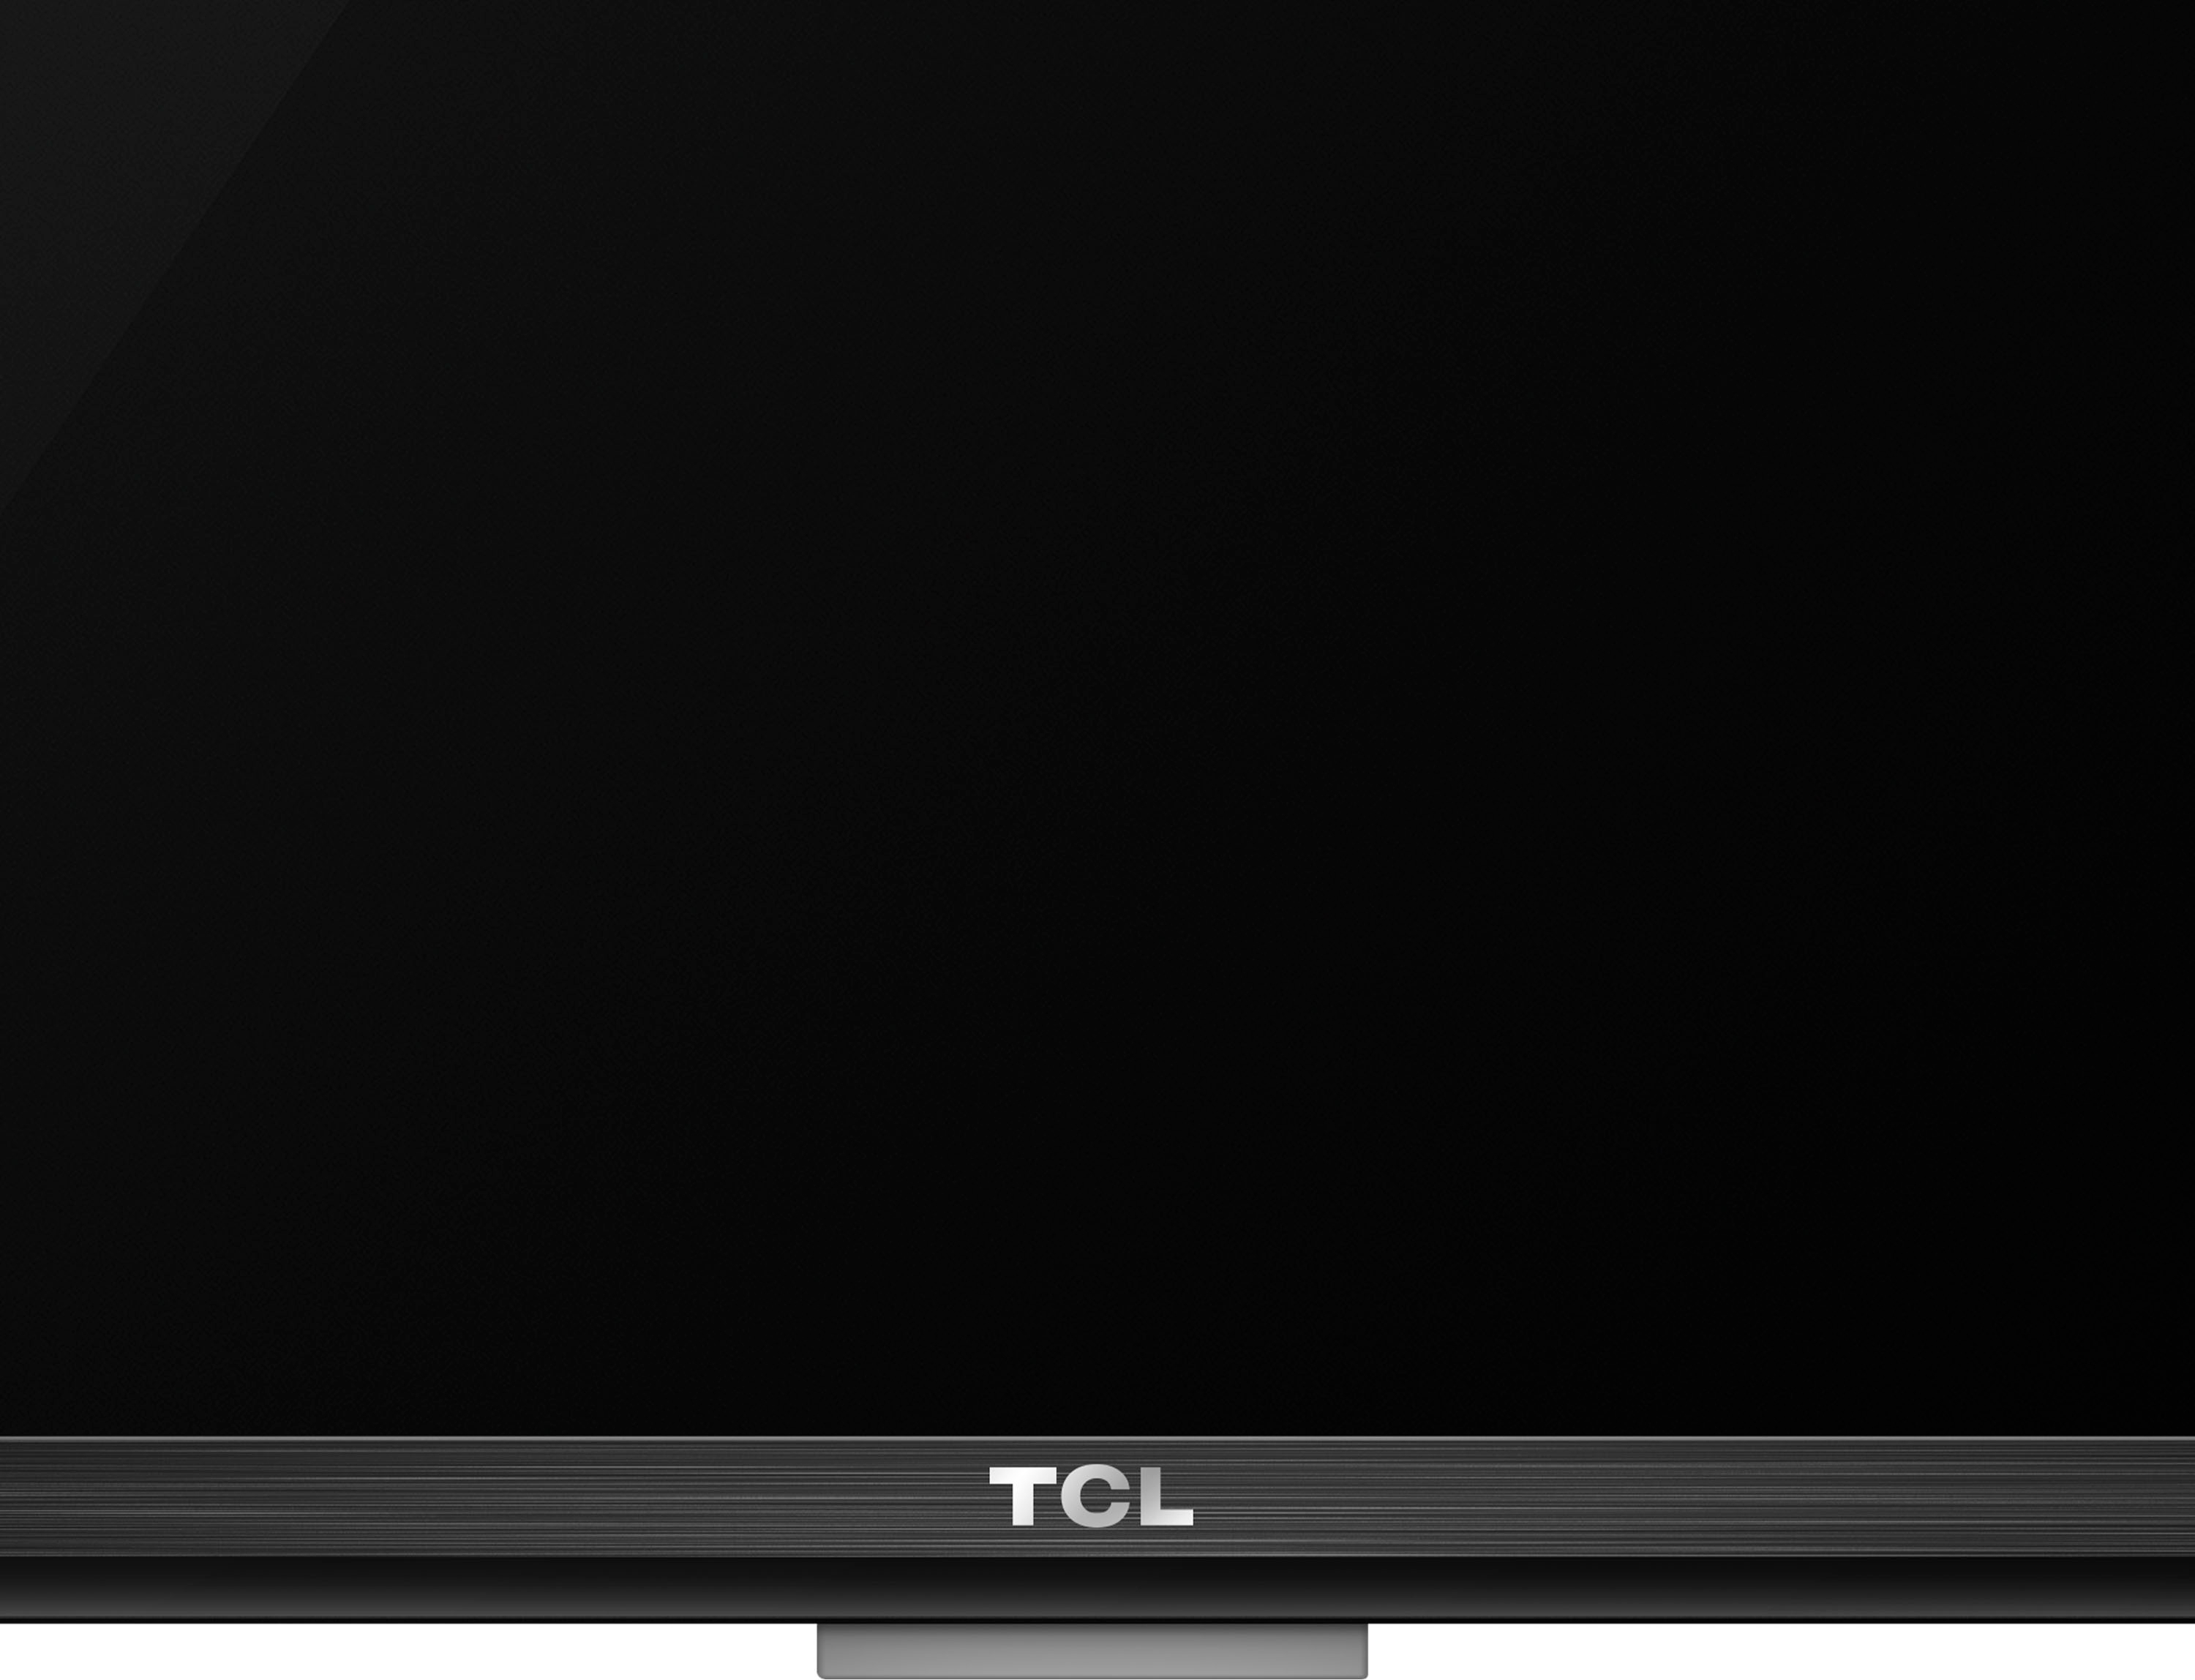 TCL Televisión Inteligente Android TV Clase 3 Series 40 Pulgadas HD LED  Modelo 40S334 2021 - ShopMundo